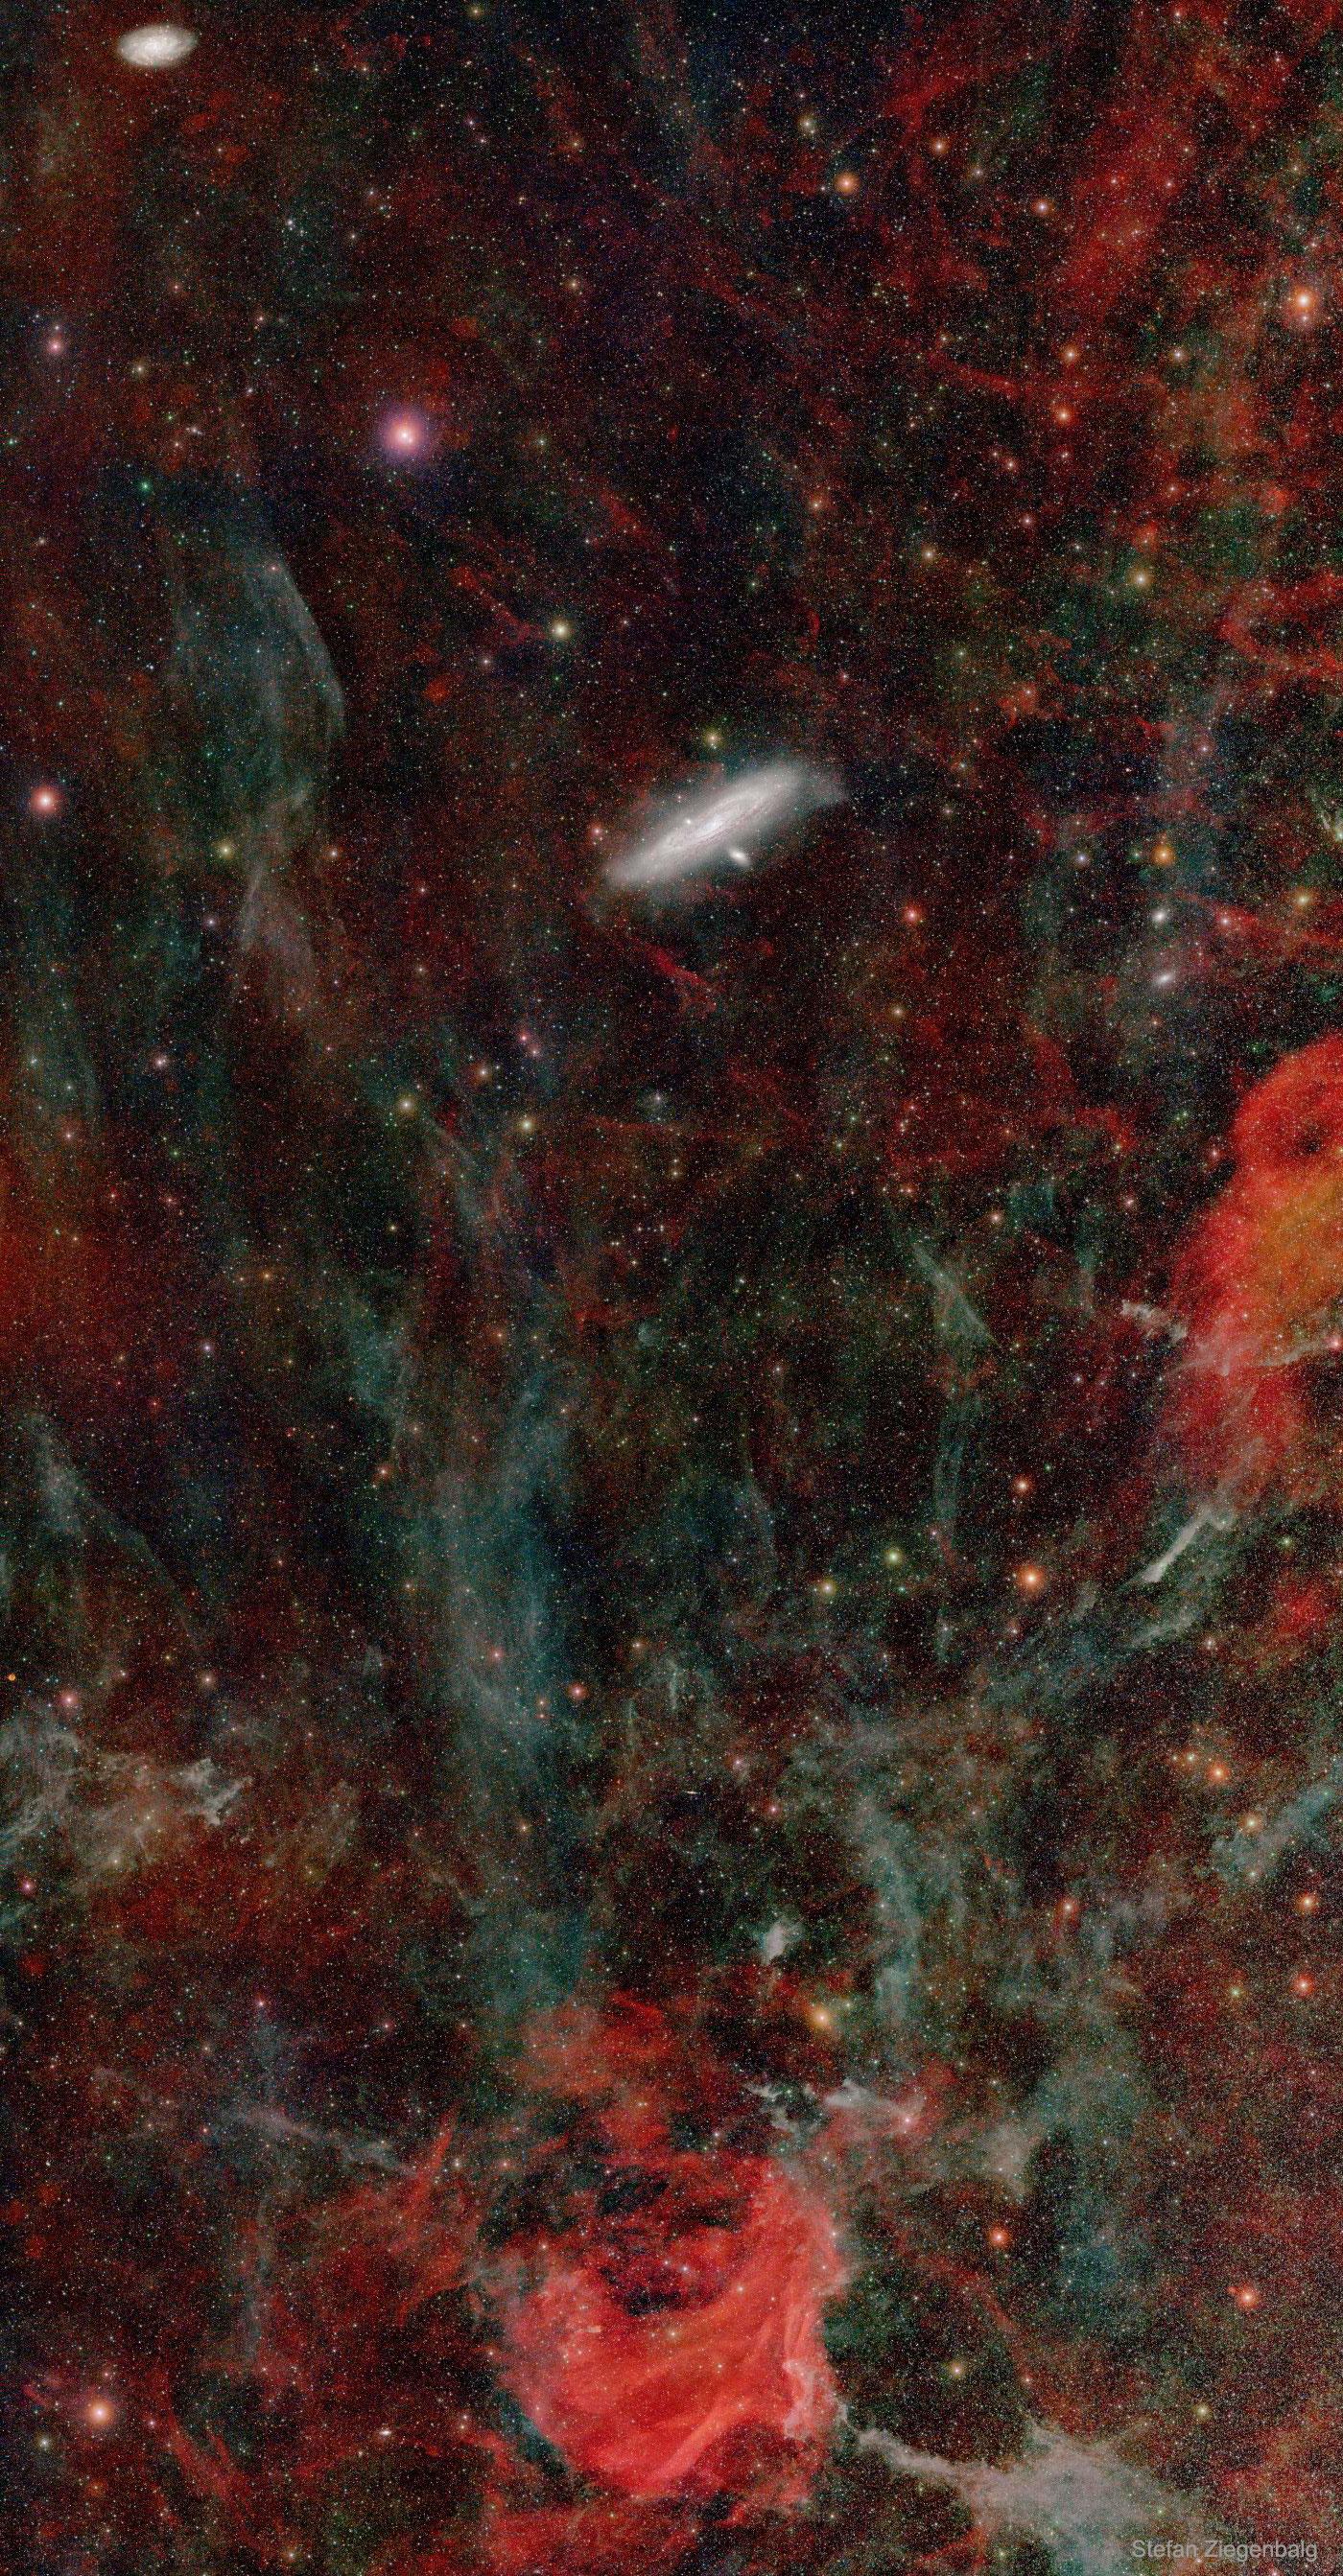 صورة ذات مجال واسع عميق تظهر المنطقة المحيطة بمجرّة المرأة المسلسلة م31 ويظهر فيها عدد من الأجرام الأخرى من سدم ومجرات ونجوم.